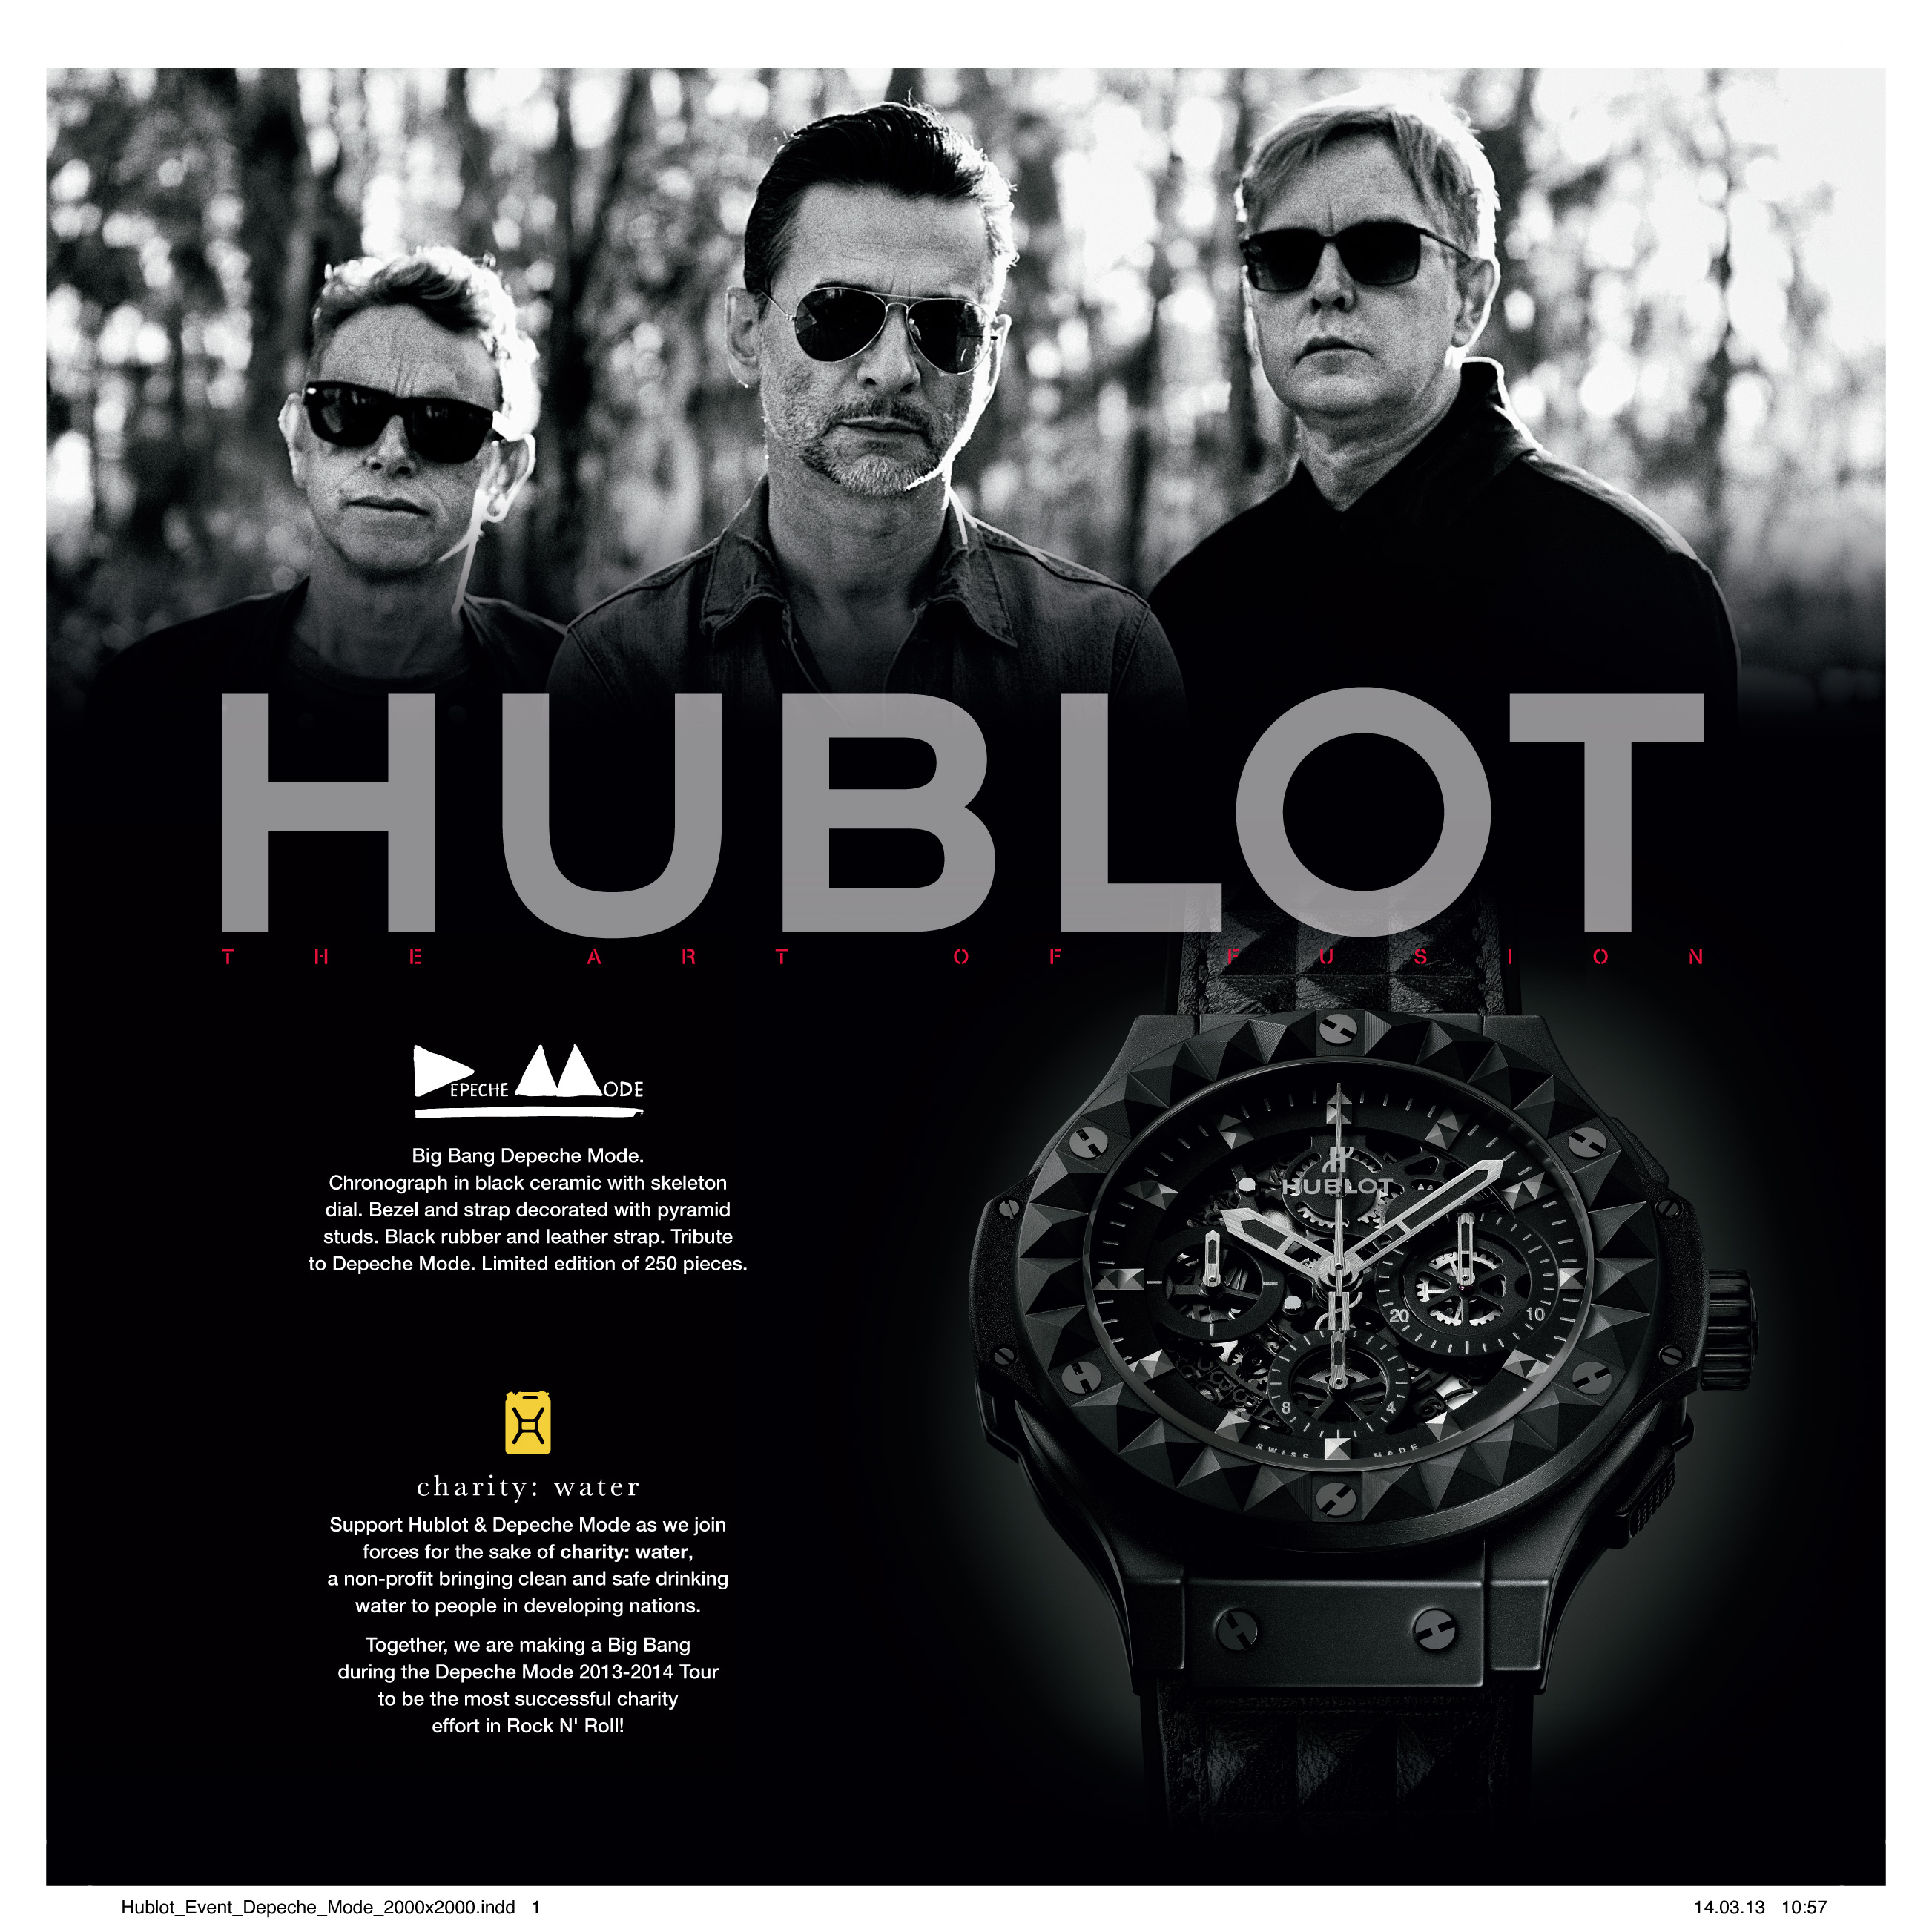 Hublot_Event_Depeche_Mode_2000x2000.indd